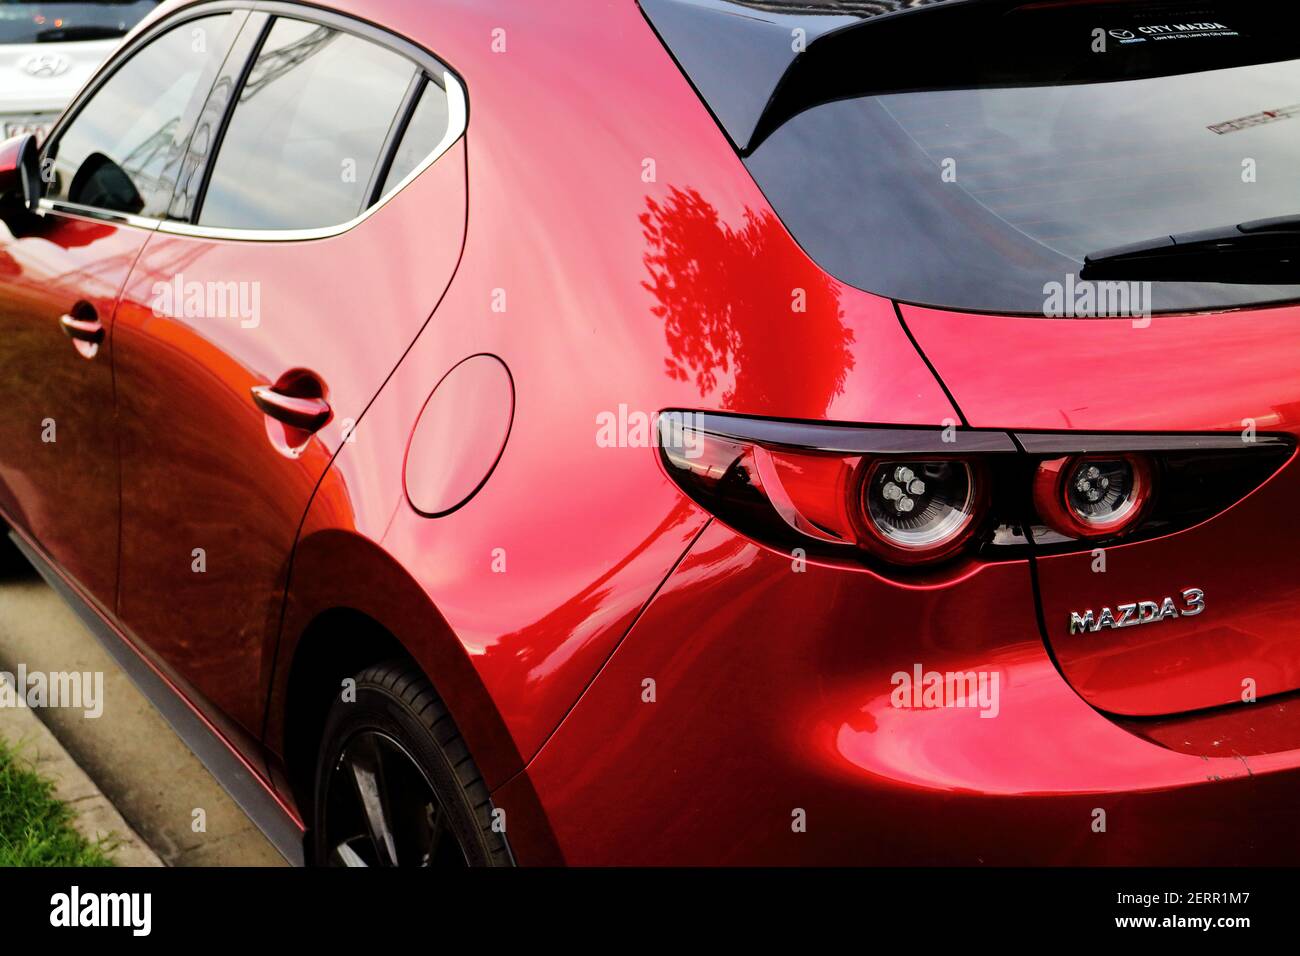 287 photos et images de Mazda3 - Getty Images